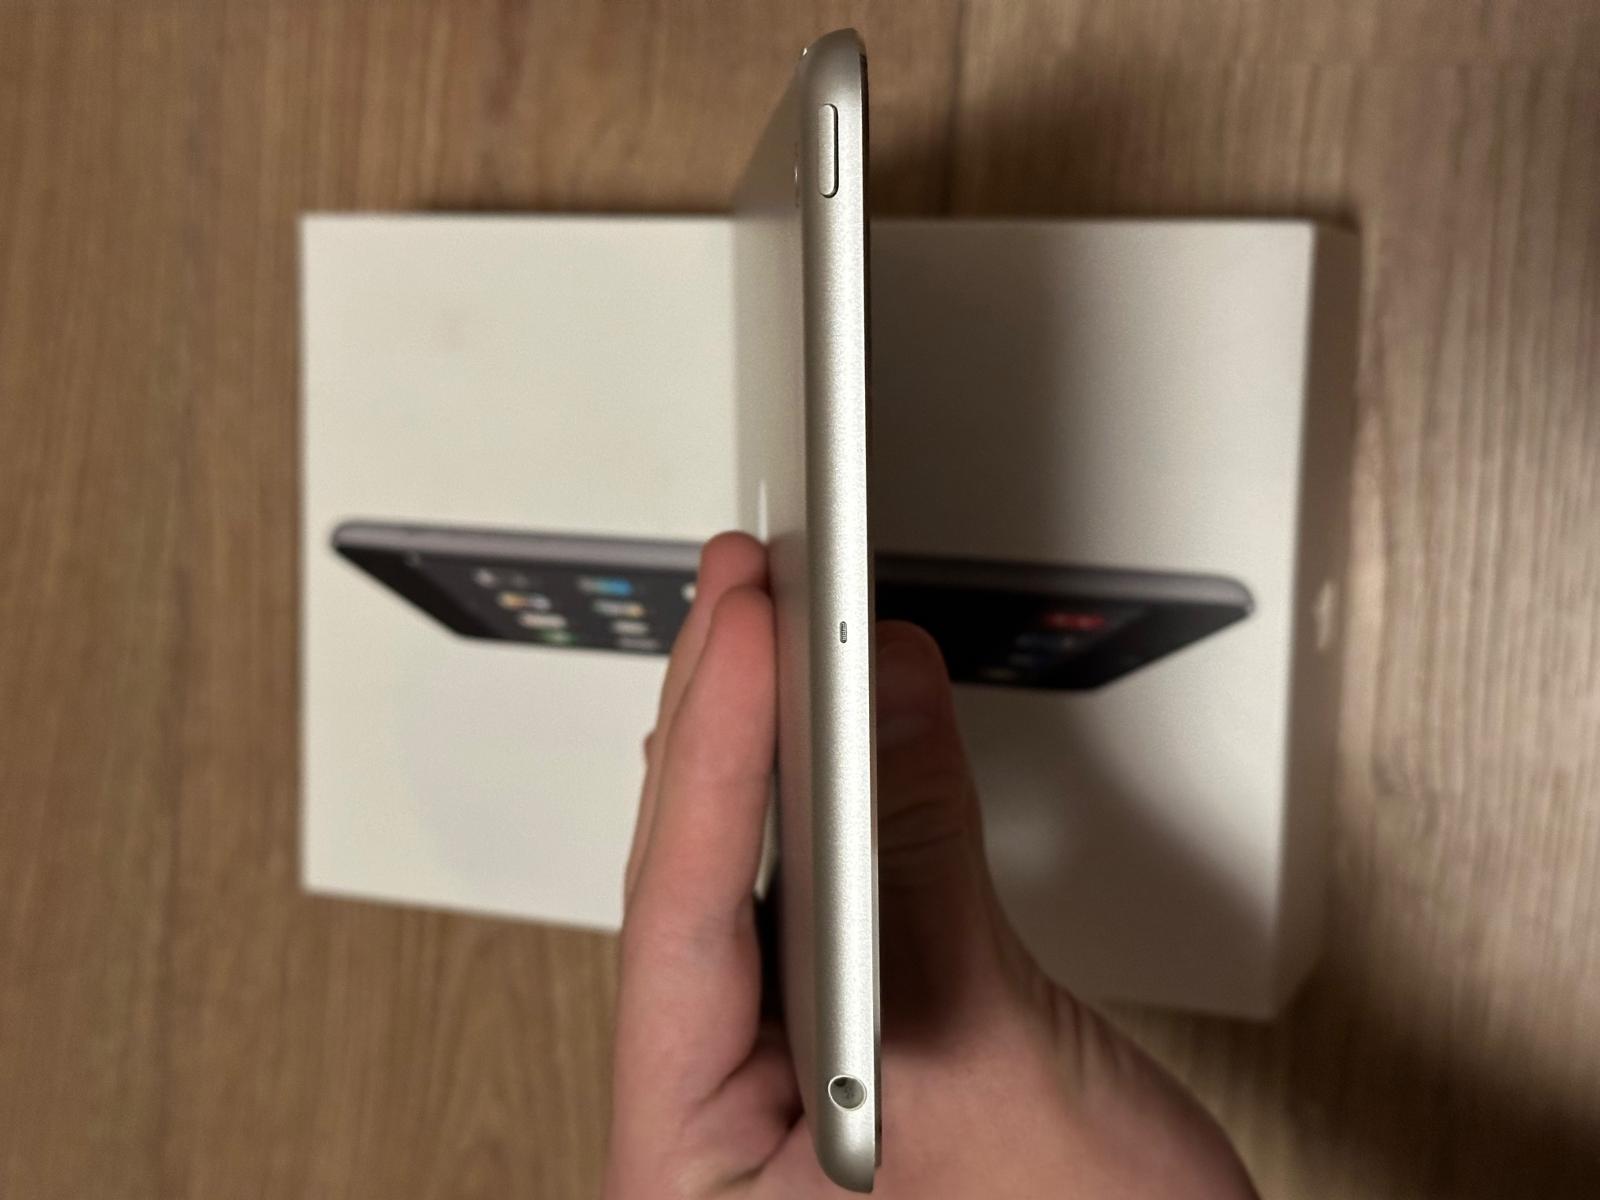 Apple iPad Mini 2 Wi-Fi 16GB bílý Model A1432 Jako nový - Počítače a hry